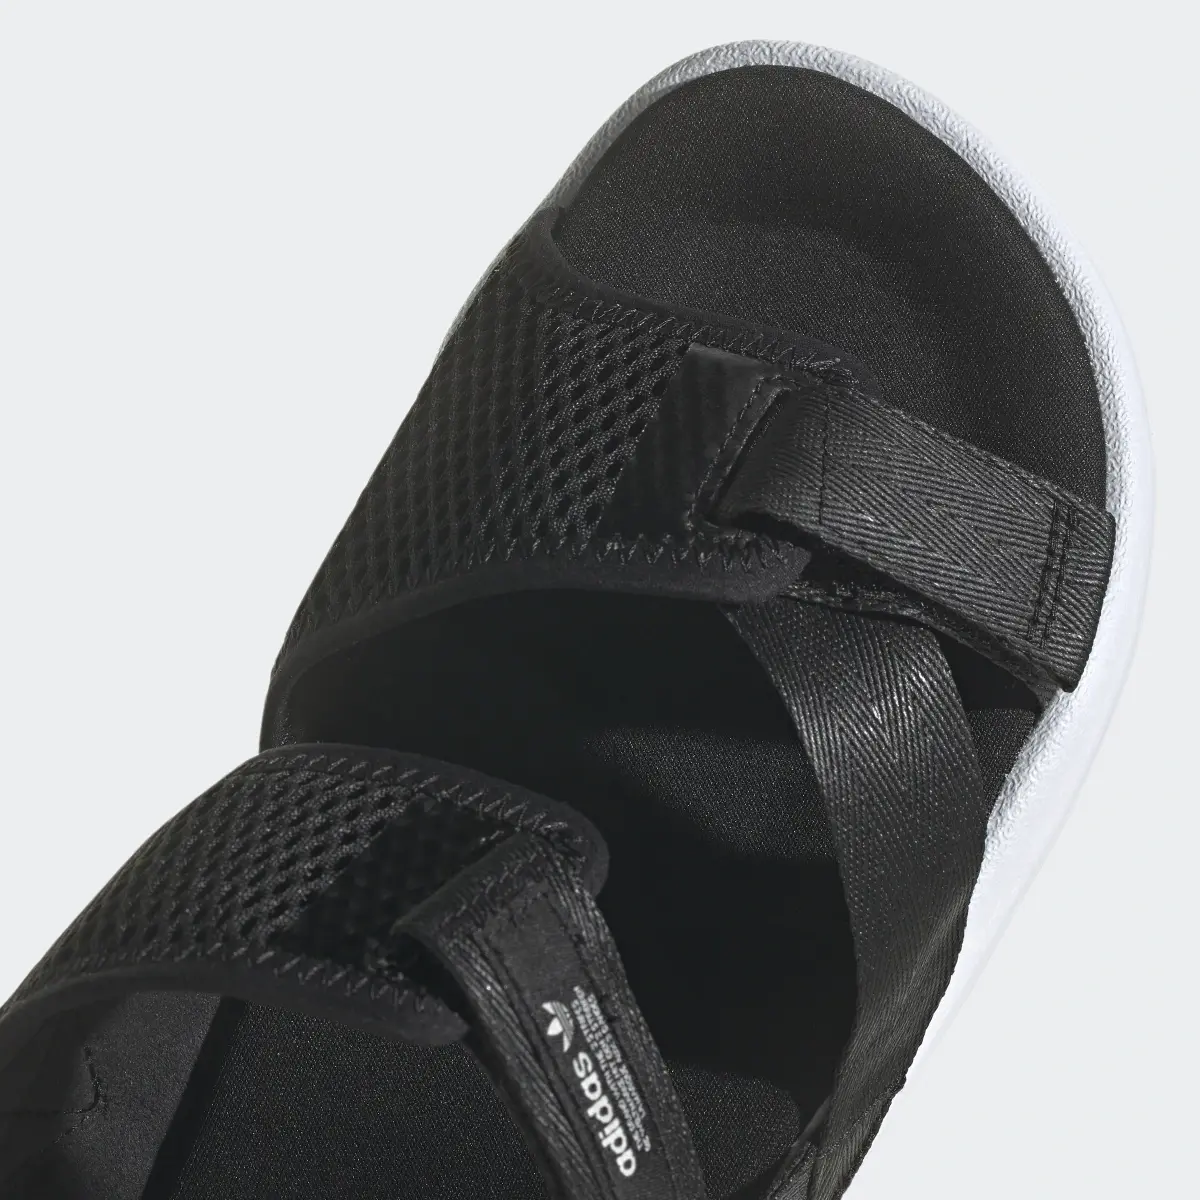 Adidas Adilette Adventure Sandals. 3